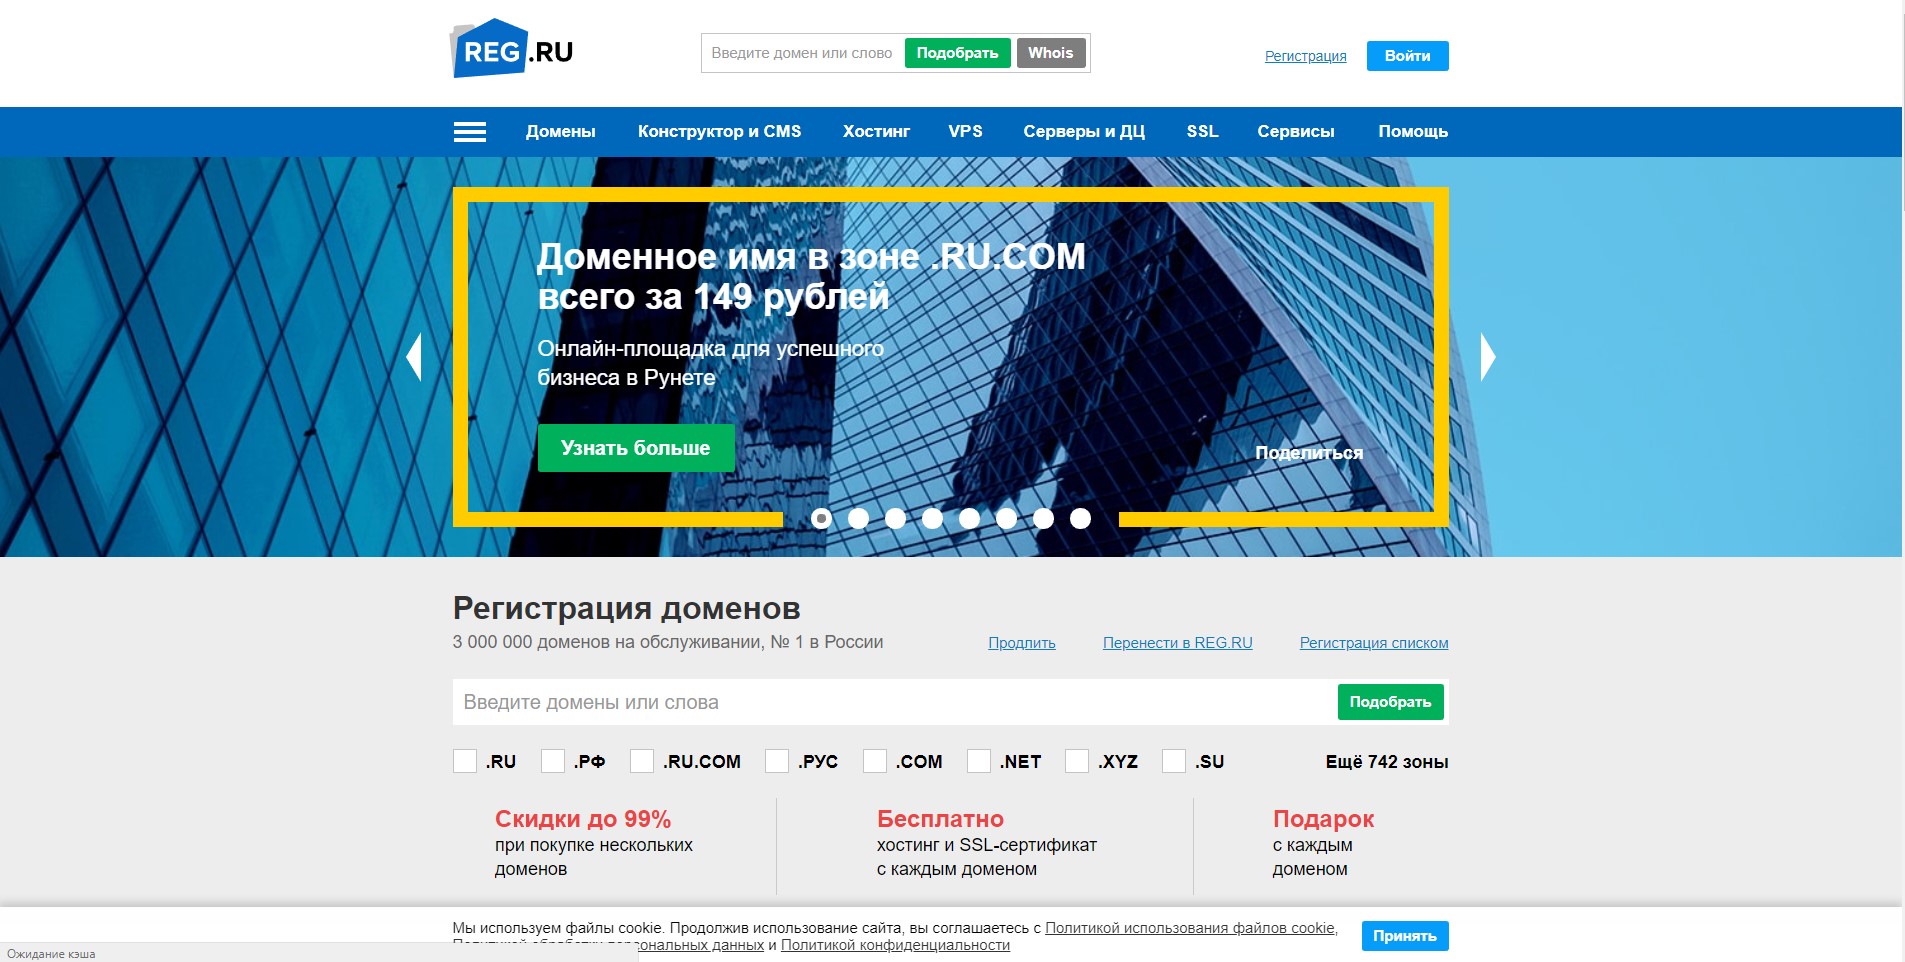 Vps reg ru. Регистрация домена и хостинг сайта. Домен хостинг и SSL. Бесплатный домен.